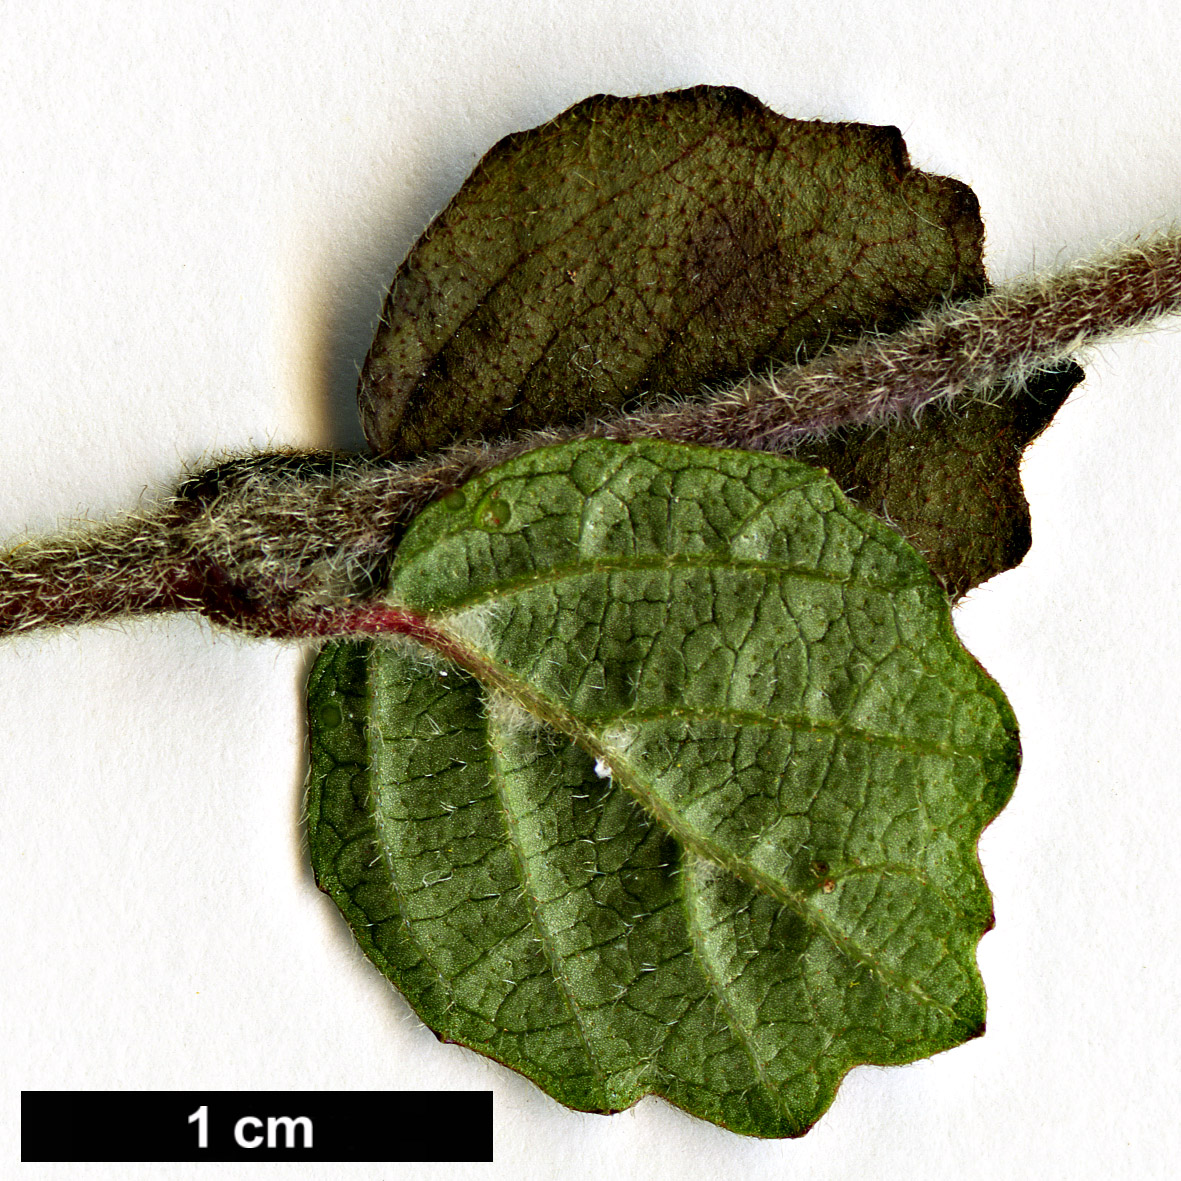 High resolution image: Family: Adoxaceae - Genus: Viburnum - Taxon: parvifolium